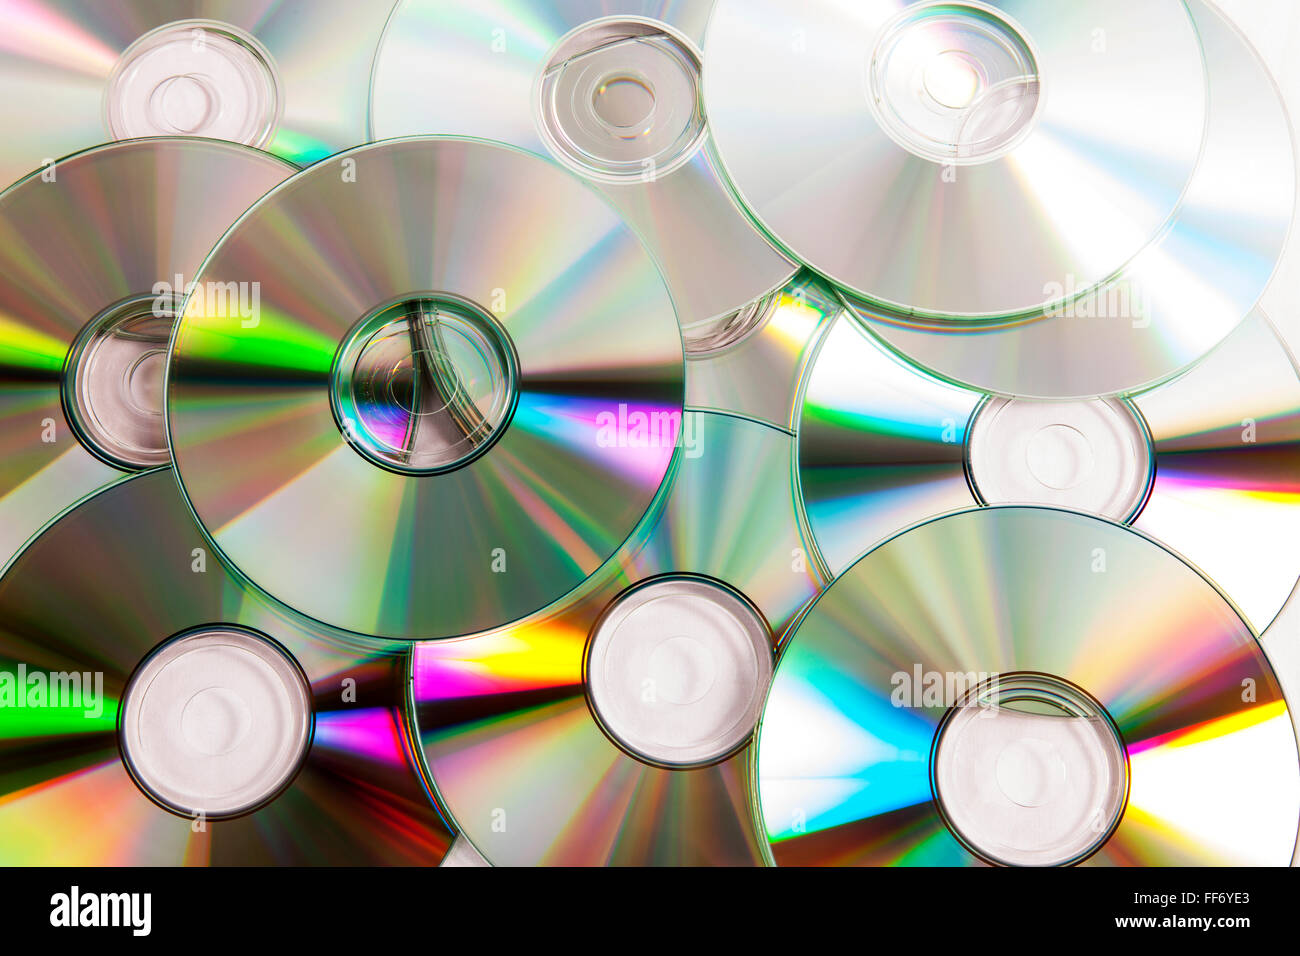 Cd dvd cd dvd, stockage de données numérique disque piratage